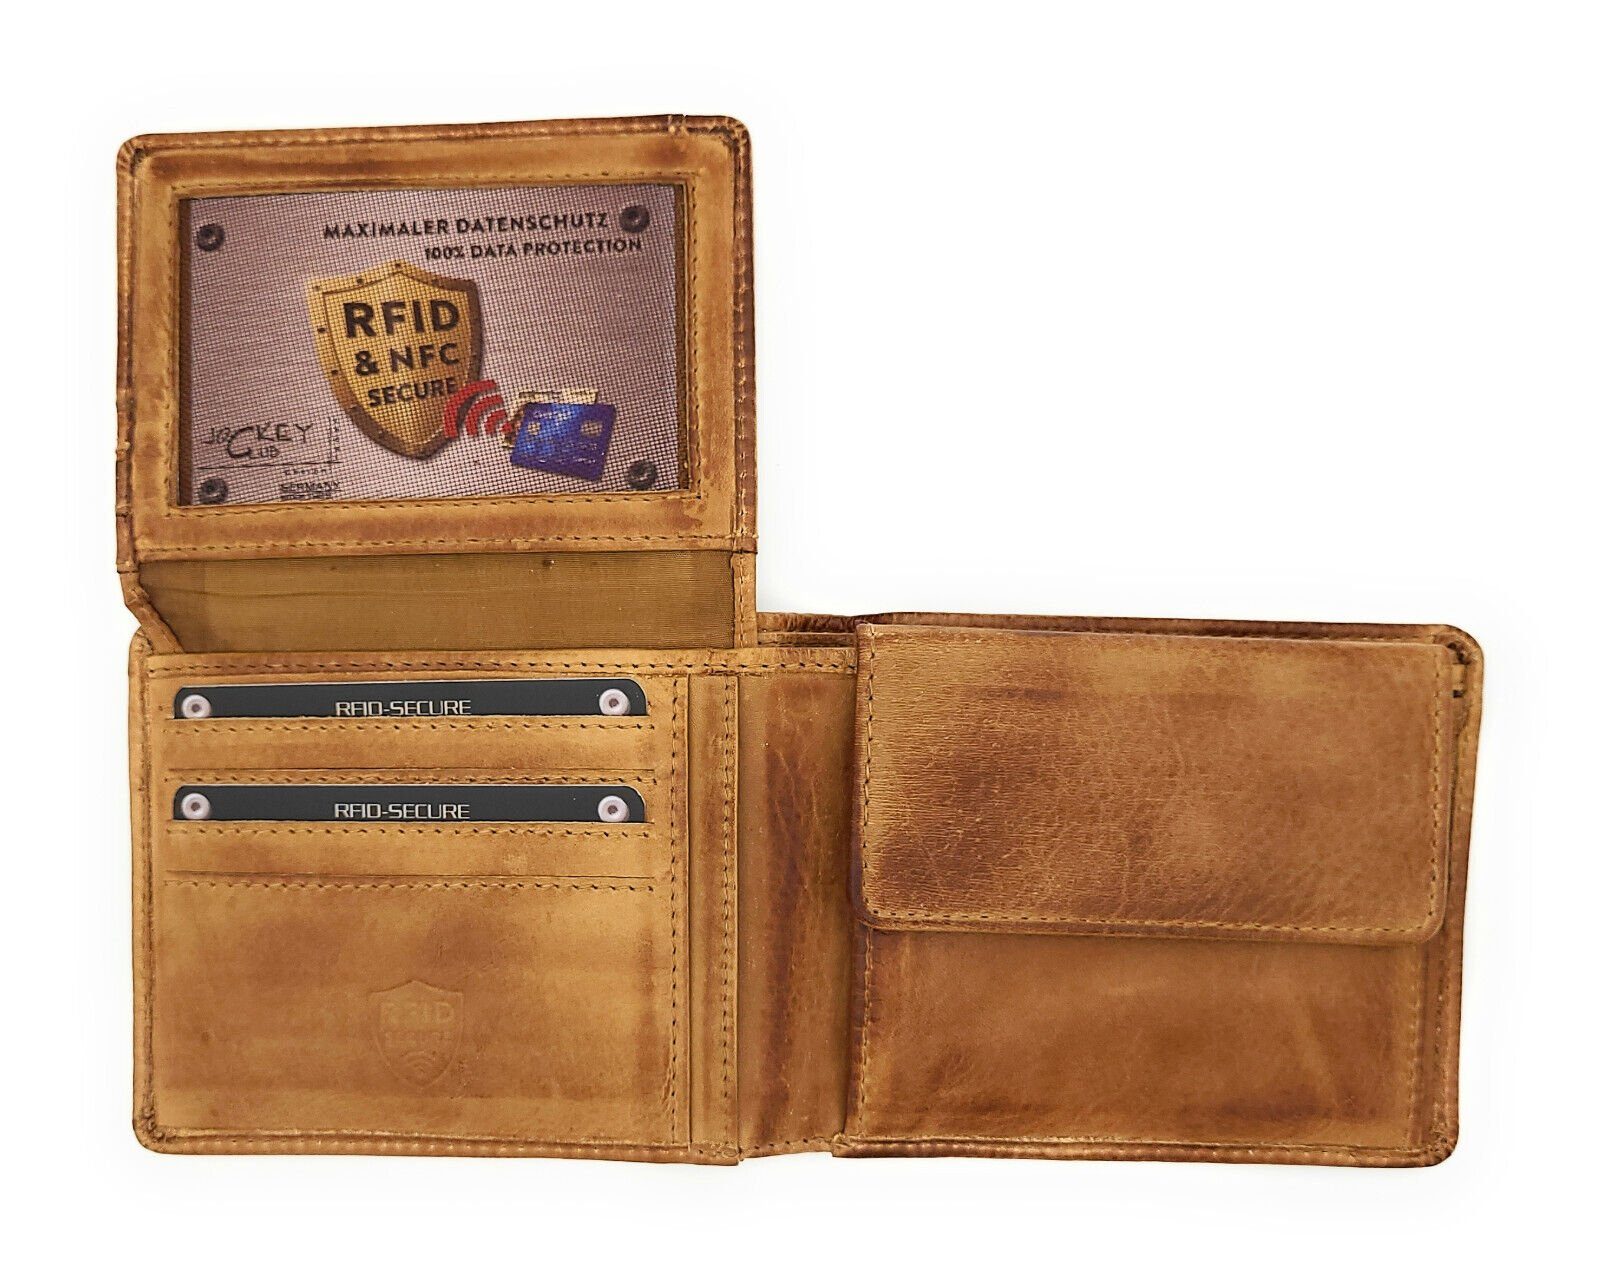 JOCKEY CLUB Geldbörse echt Leder Portemonnaie mit RFID Schutz, gewachstes Rindleder, Hochausleger, vintage, cognac braun